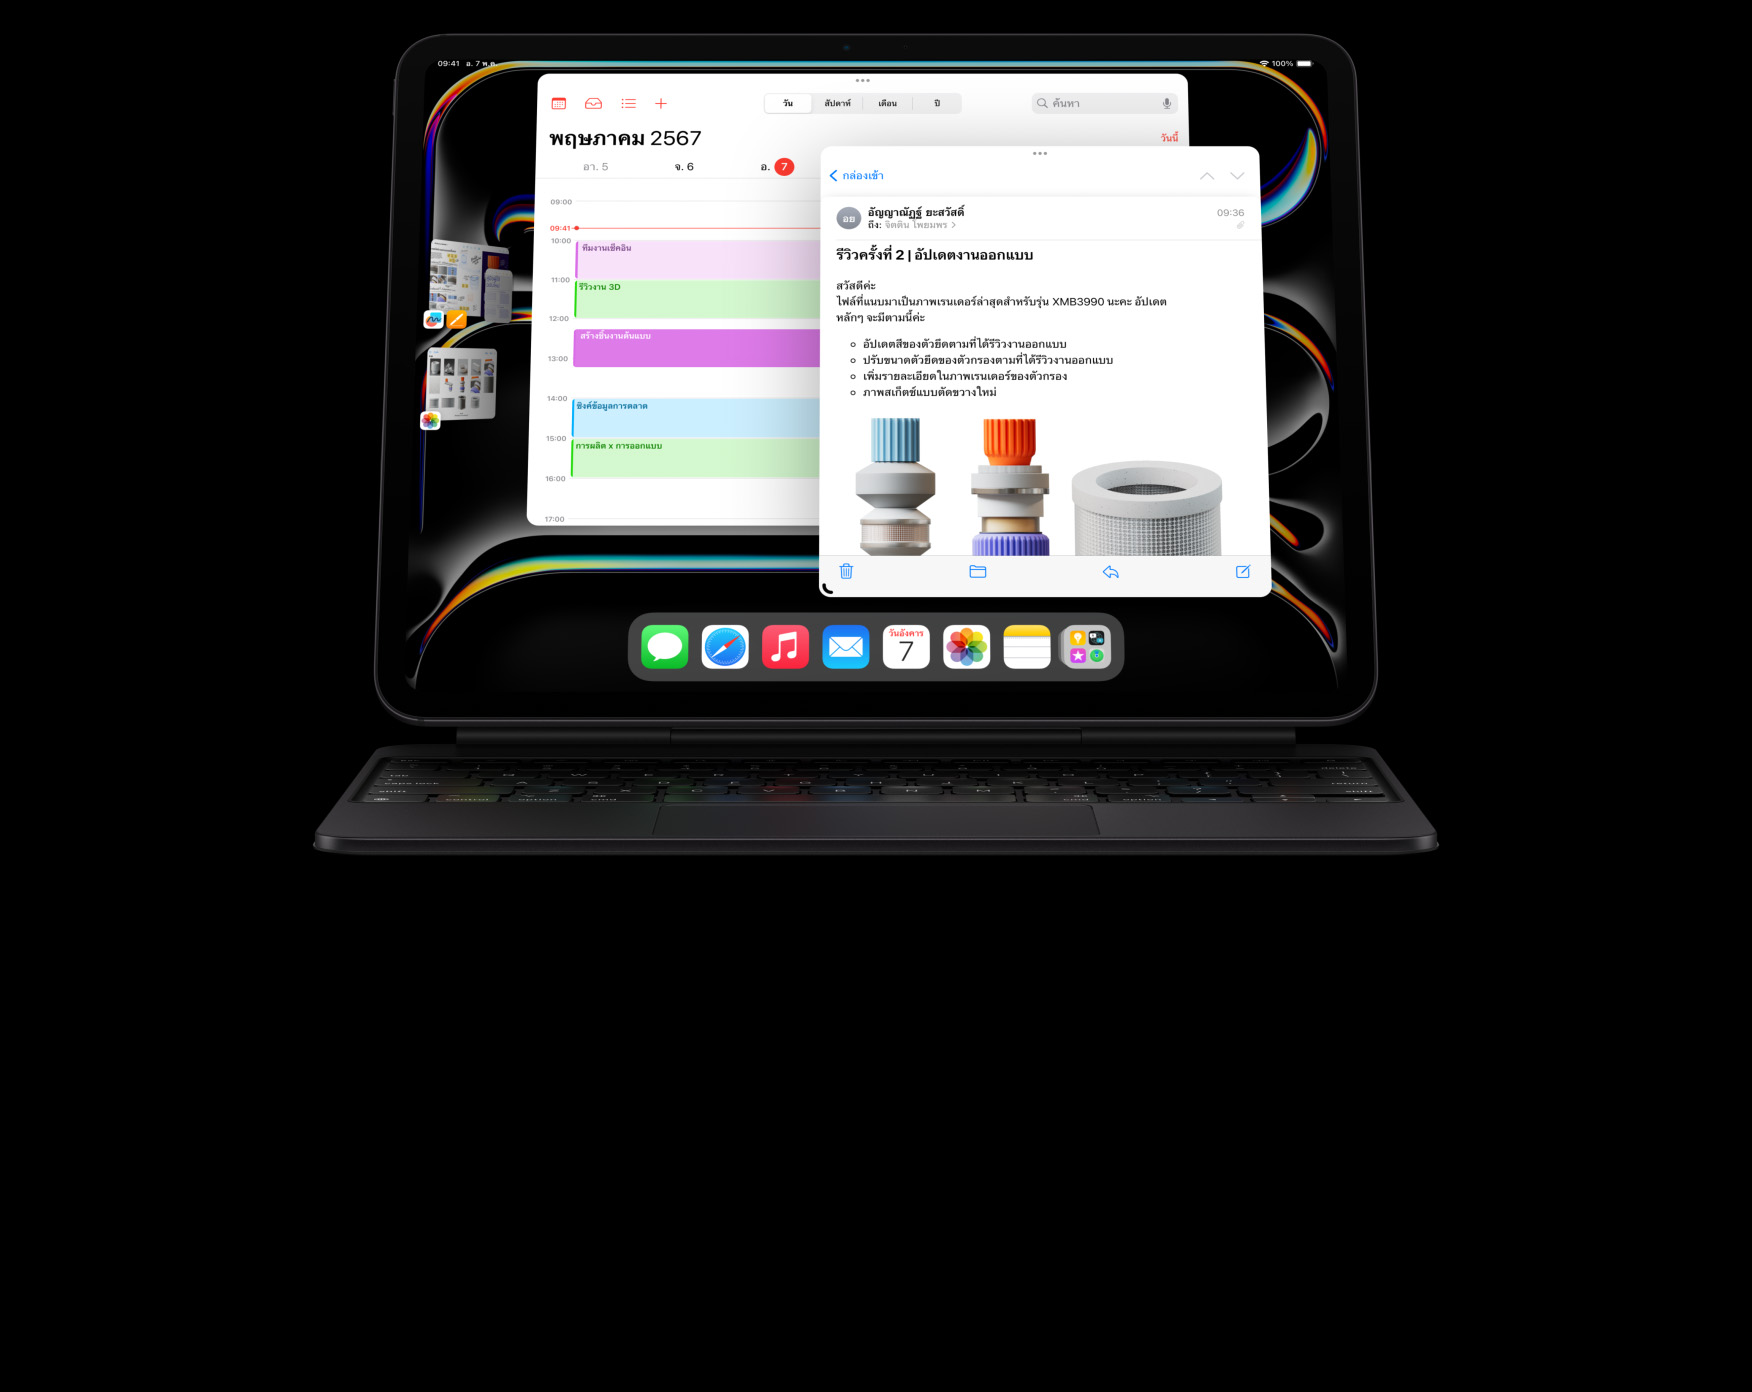 iPad Pro ที่ติดเข้ากับ Magic Keyboard ในแนวนอน โดยผู้ใช้กำลังทำงานแบบมัลติทาสก์ และมีแอปเปิดไว้จำนวนมาก